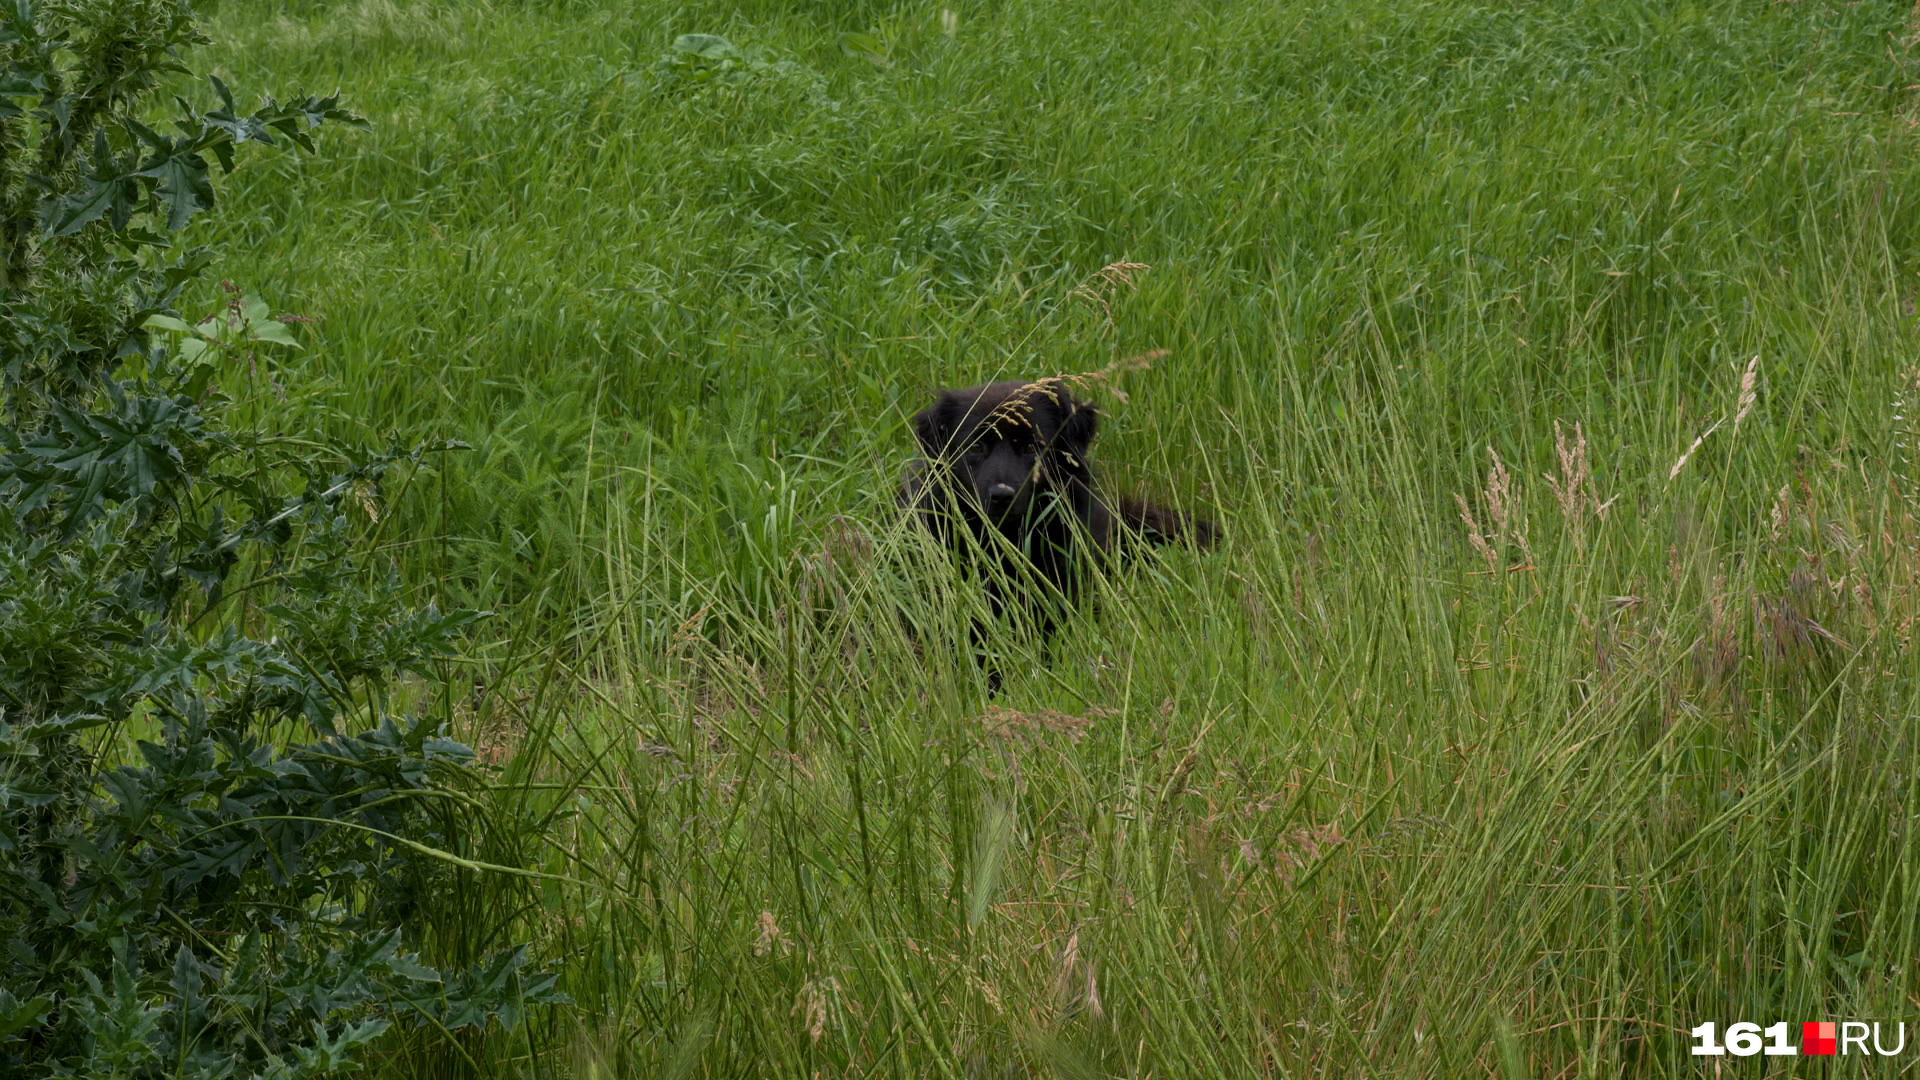 Собак в траве, собственно, тоже уже не видно